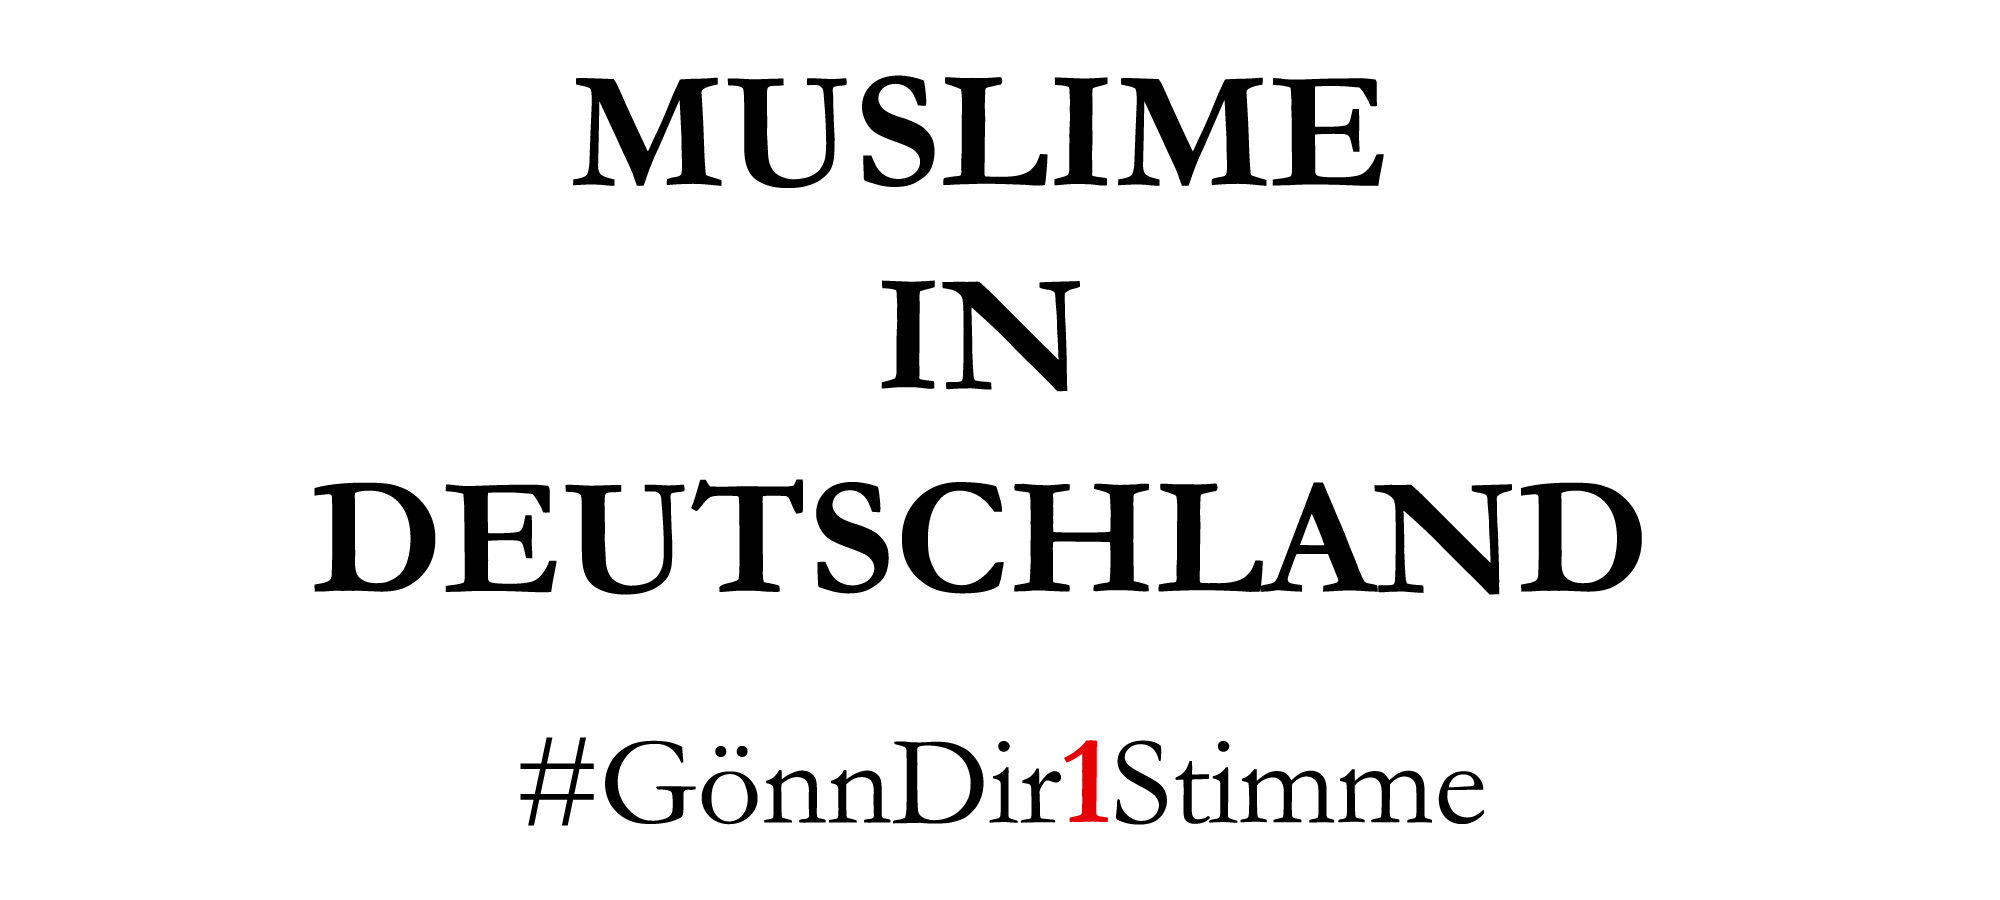 Wir Muslime sehen uns als Teil der deutschen Gesellschaft, jedoch denken viele, dass man nicht gleichzeitig deutsch und muslimisch sein kann. Was sagen Sie dazu: